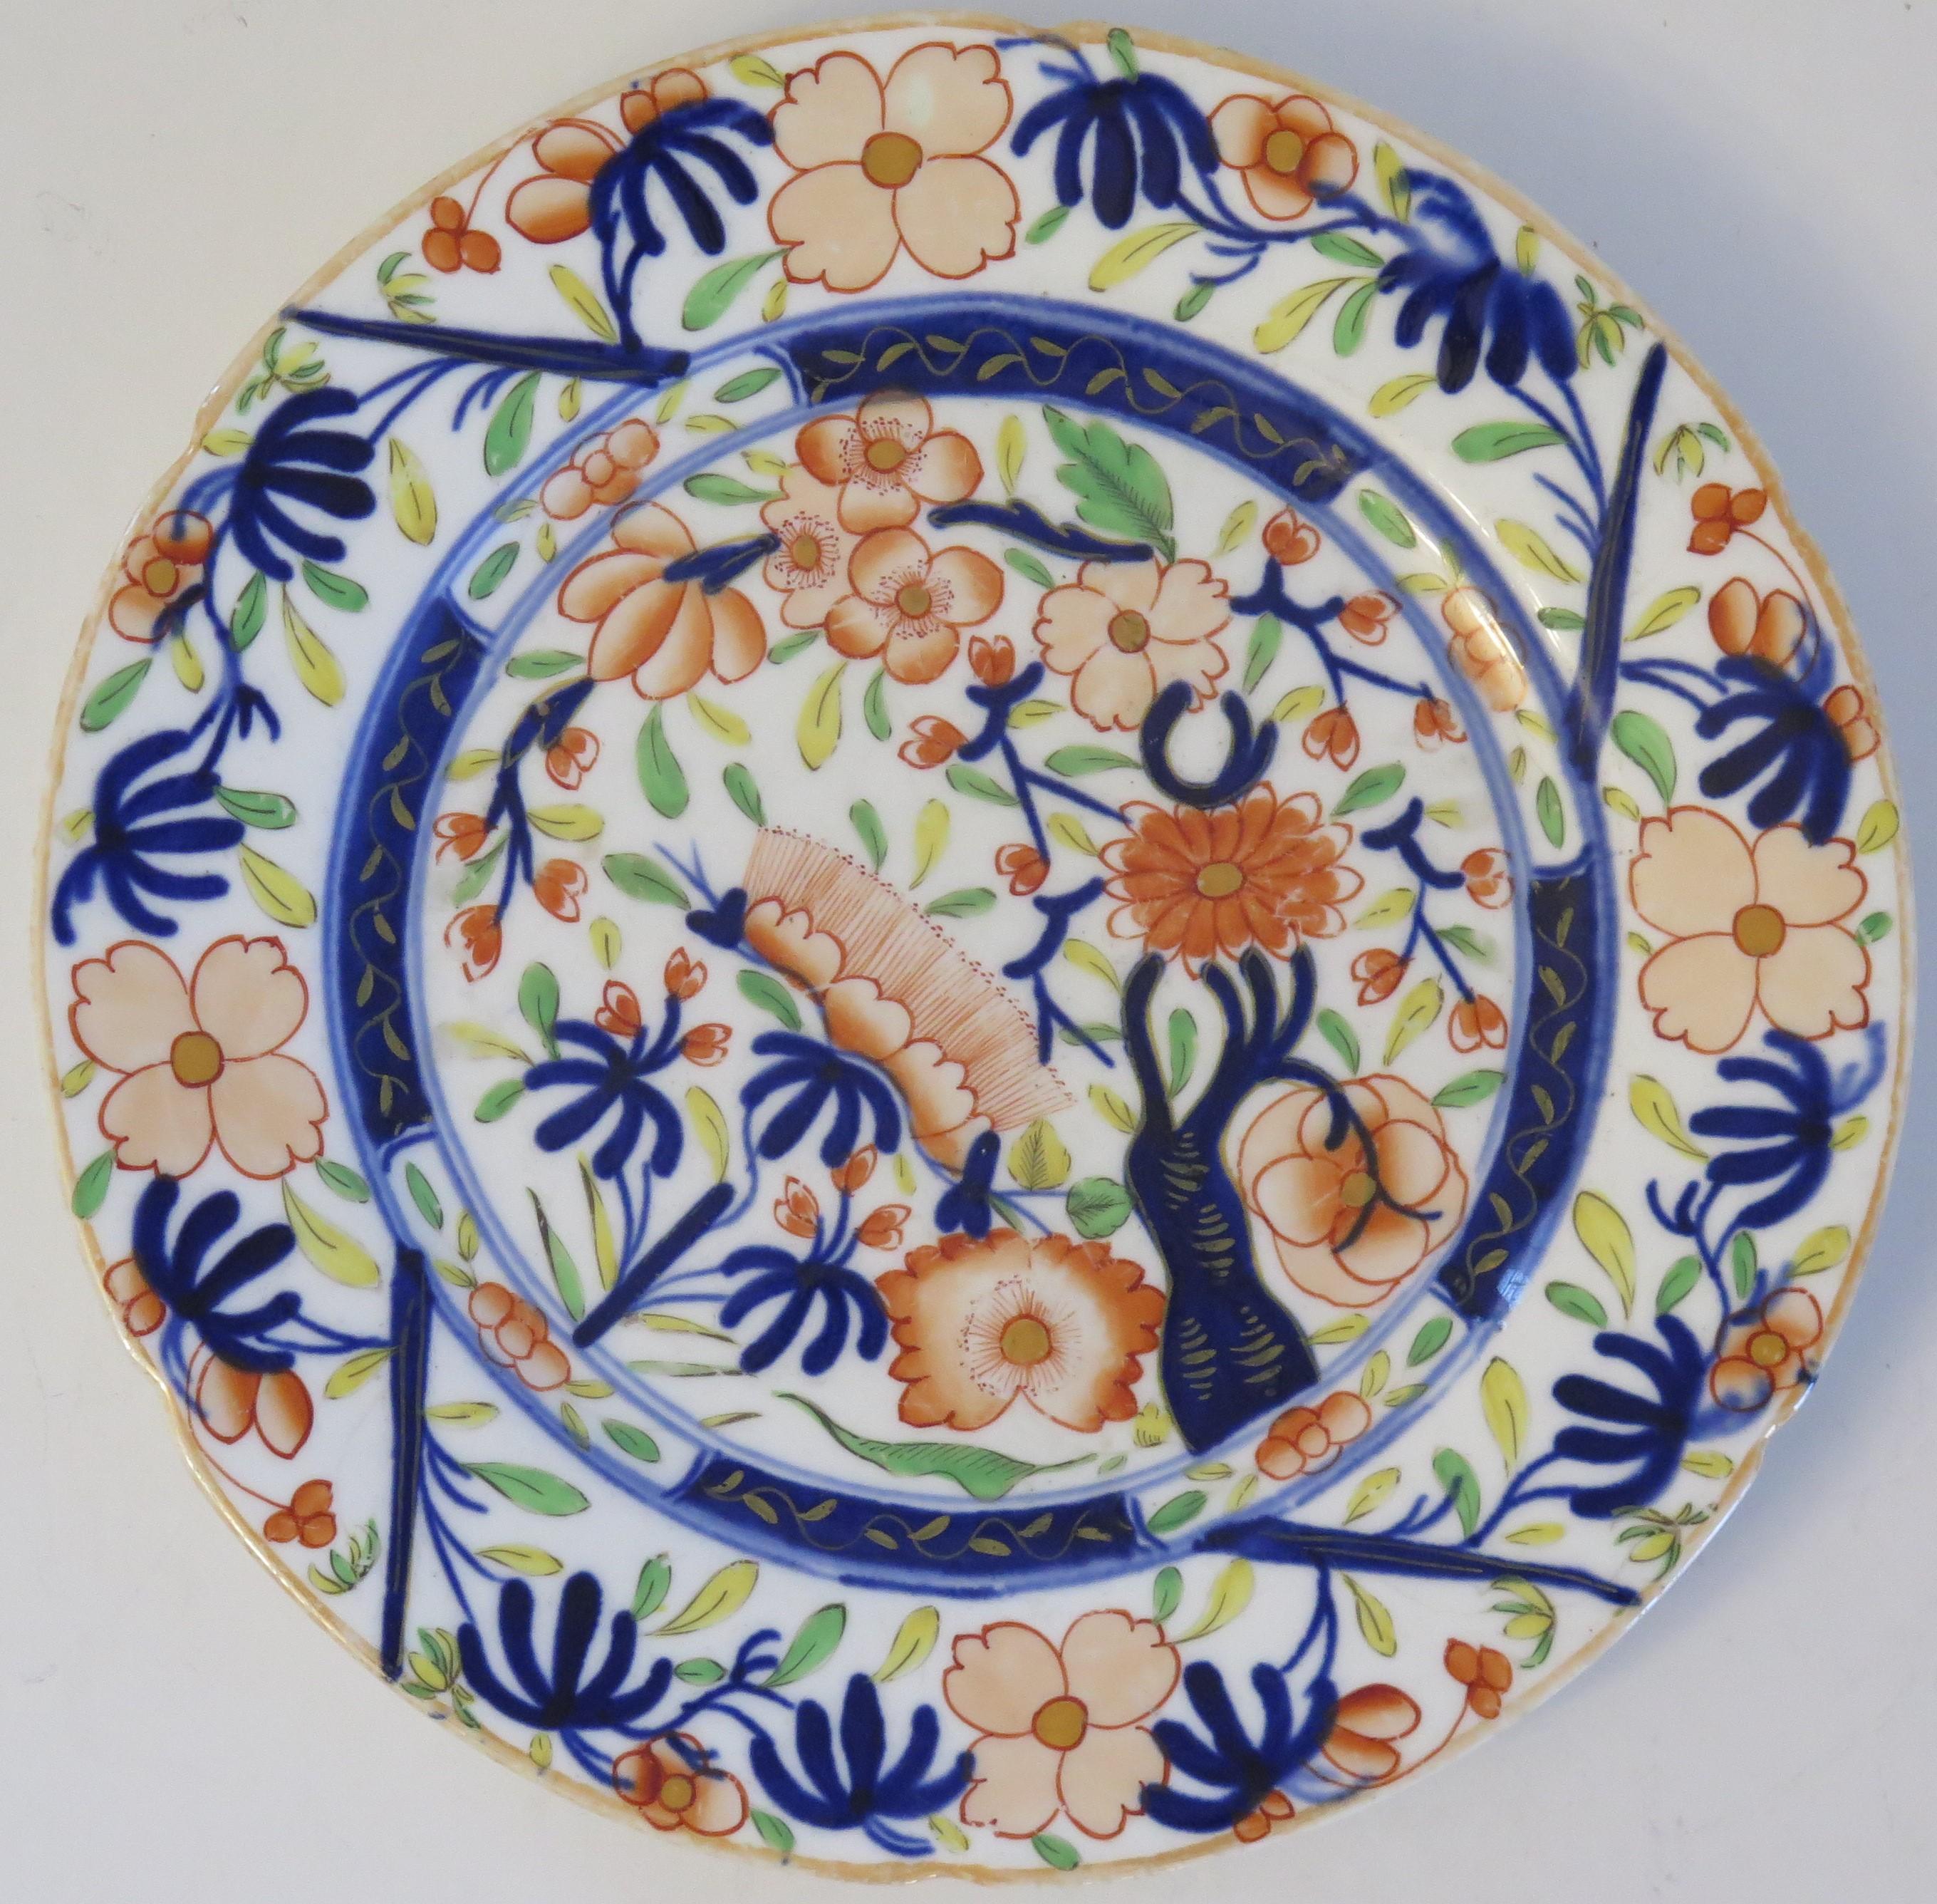 Il s'agit d'une assiette ou d'un plat à dessert en porcelaine du début du 19e siècle avec un bord ondulé moulé, fabriqué par l'une des poteries anglaises de qualité du Staffordshire et datant de la période George 111, entre 1820 et 1830